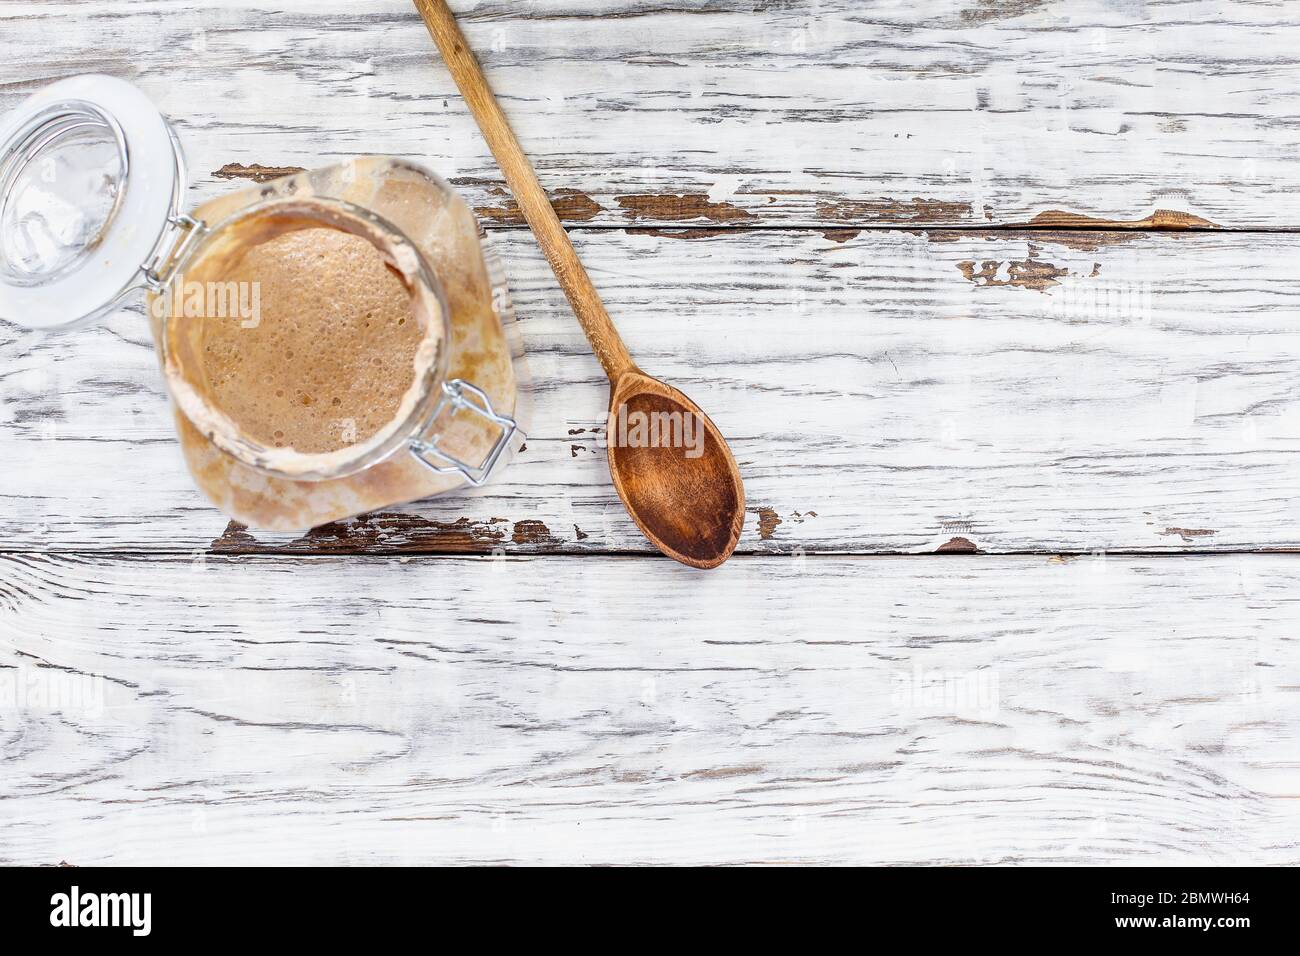 Antipasto attivo vivo di pasta di grano integrale con un cucchiaio di legno su un tavolo/sfondo bianco rustico in legno con spazio libero per il testo immagine ripresa dall'alto Foto Stock